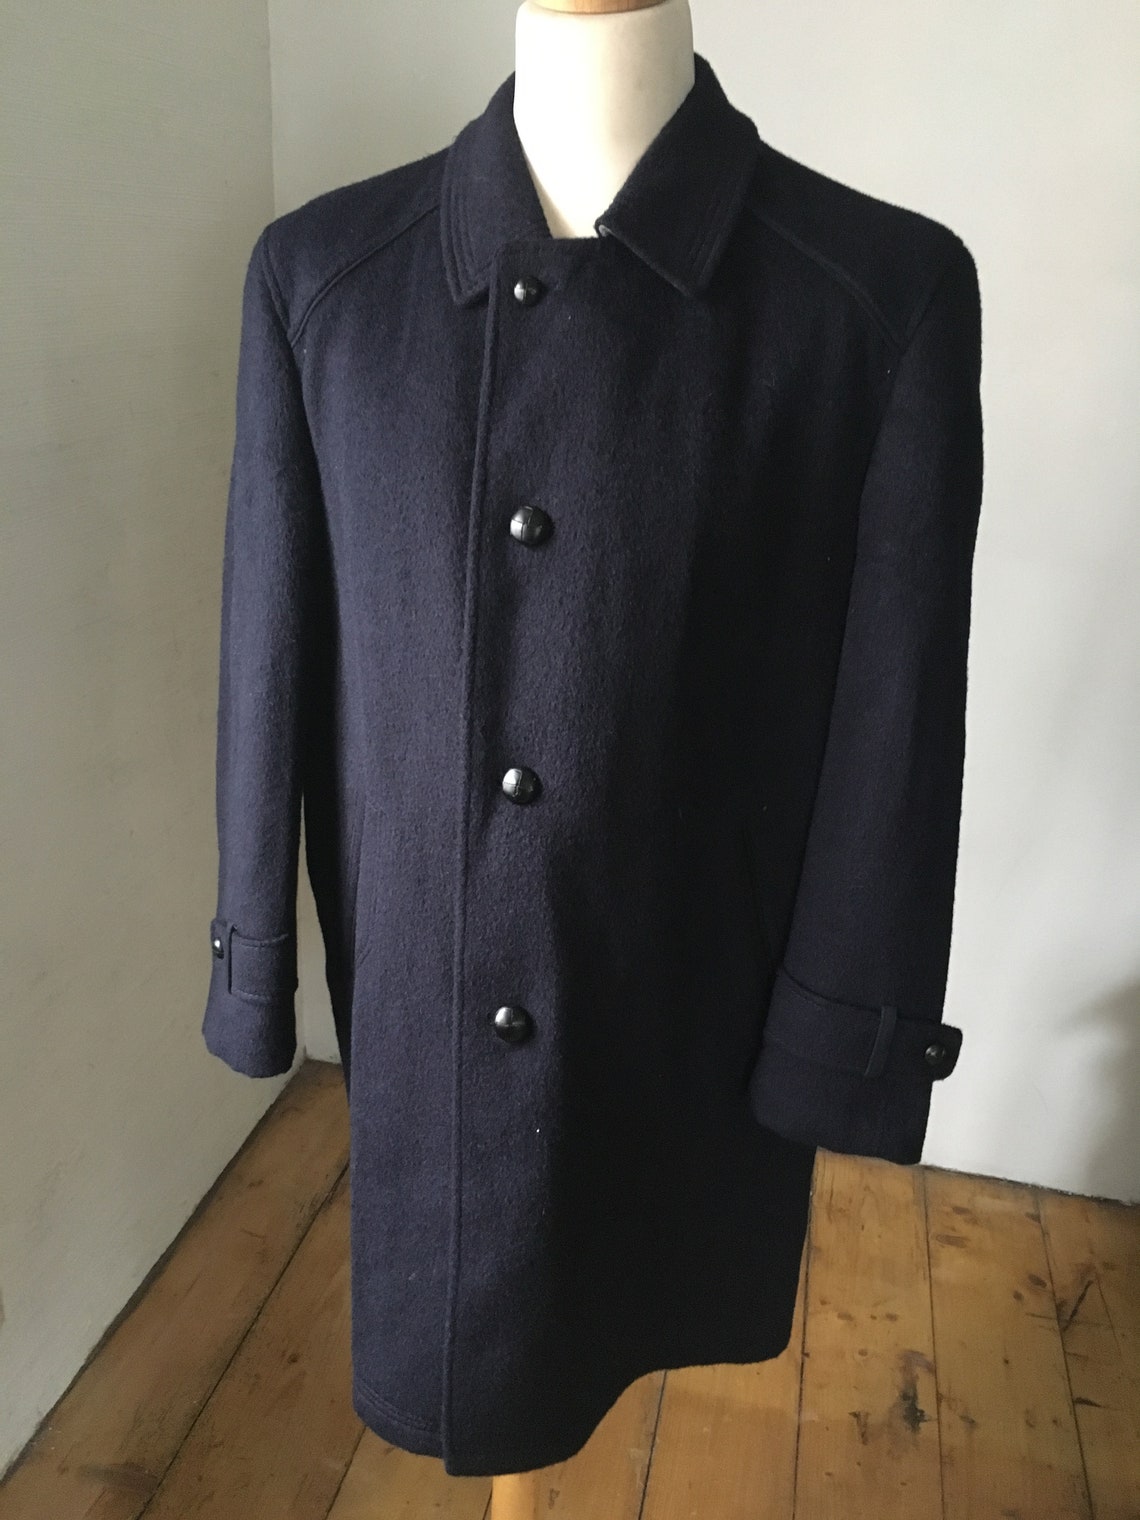 STEINBOCK Tyrol Trachten Austrian Vintage Overcoat Jacket | Etsy